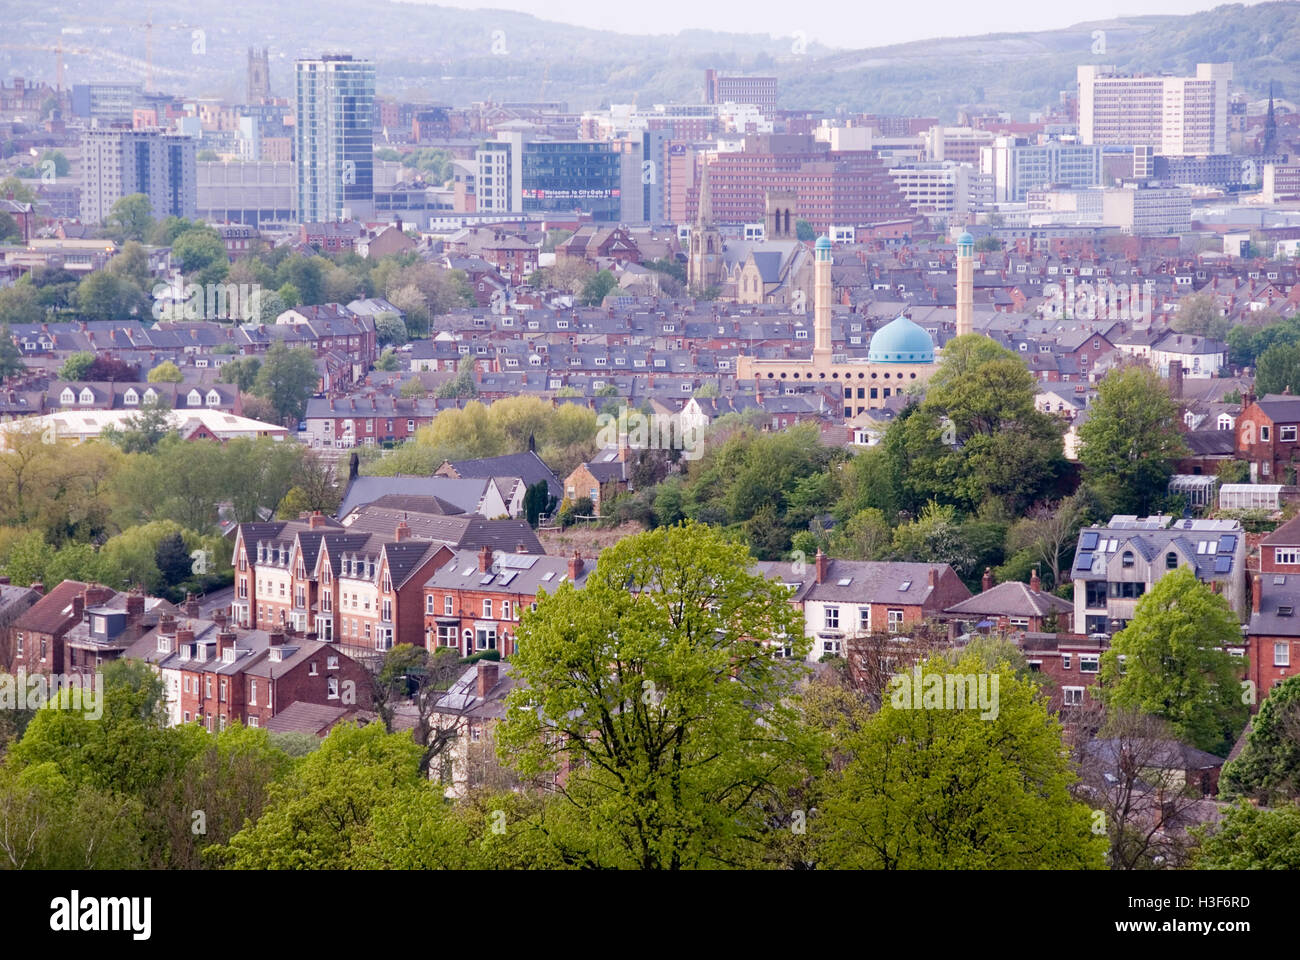 Sheffield, UK 3. Mai 2014: Meersbrook Park bietet einen atemberaubenden Blick über die Stadt von Sheffield, Yorkshire, Großbritannien Stockfoto